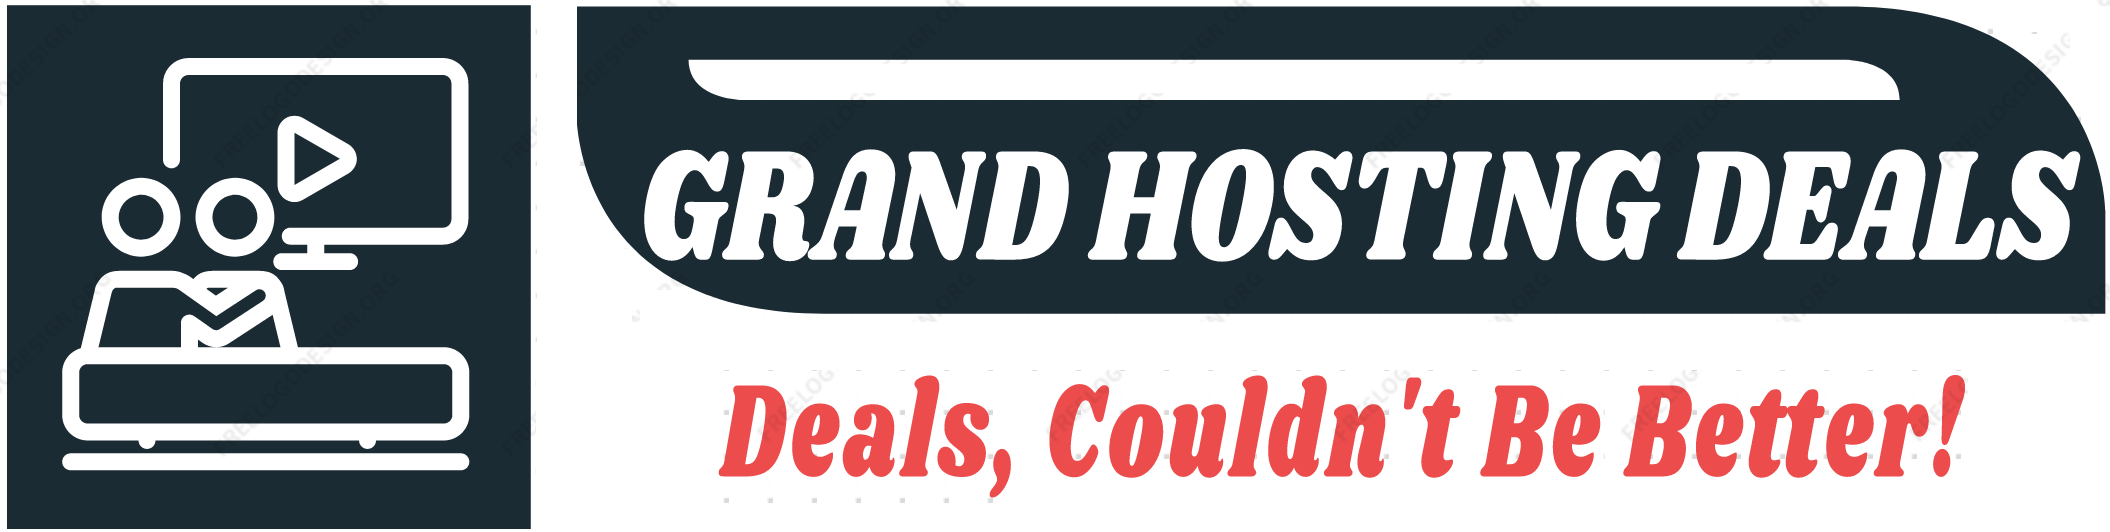 Grand Hosting Deals